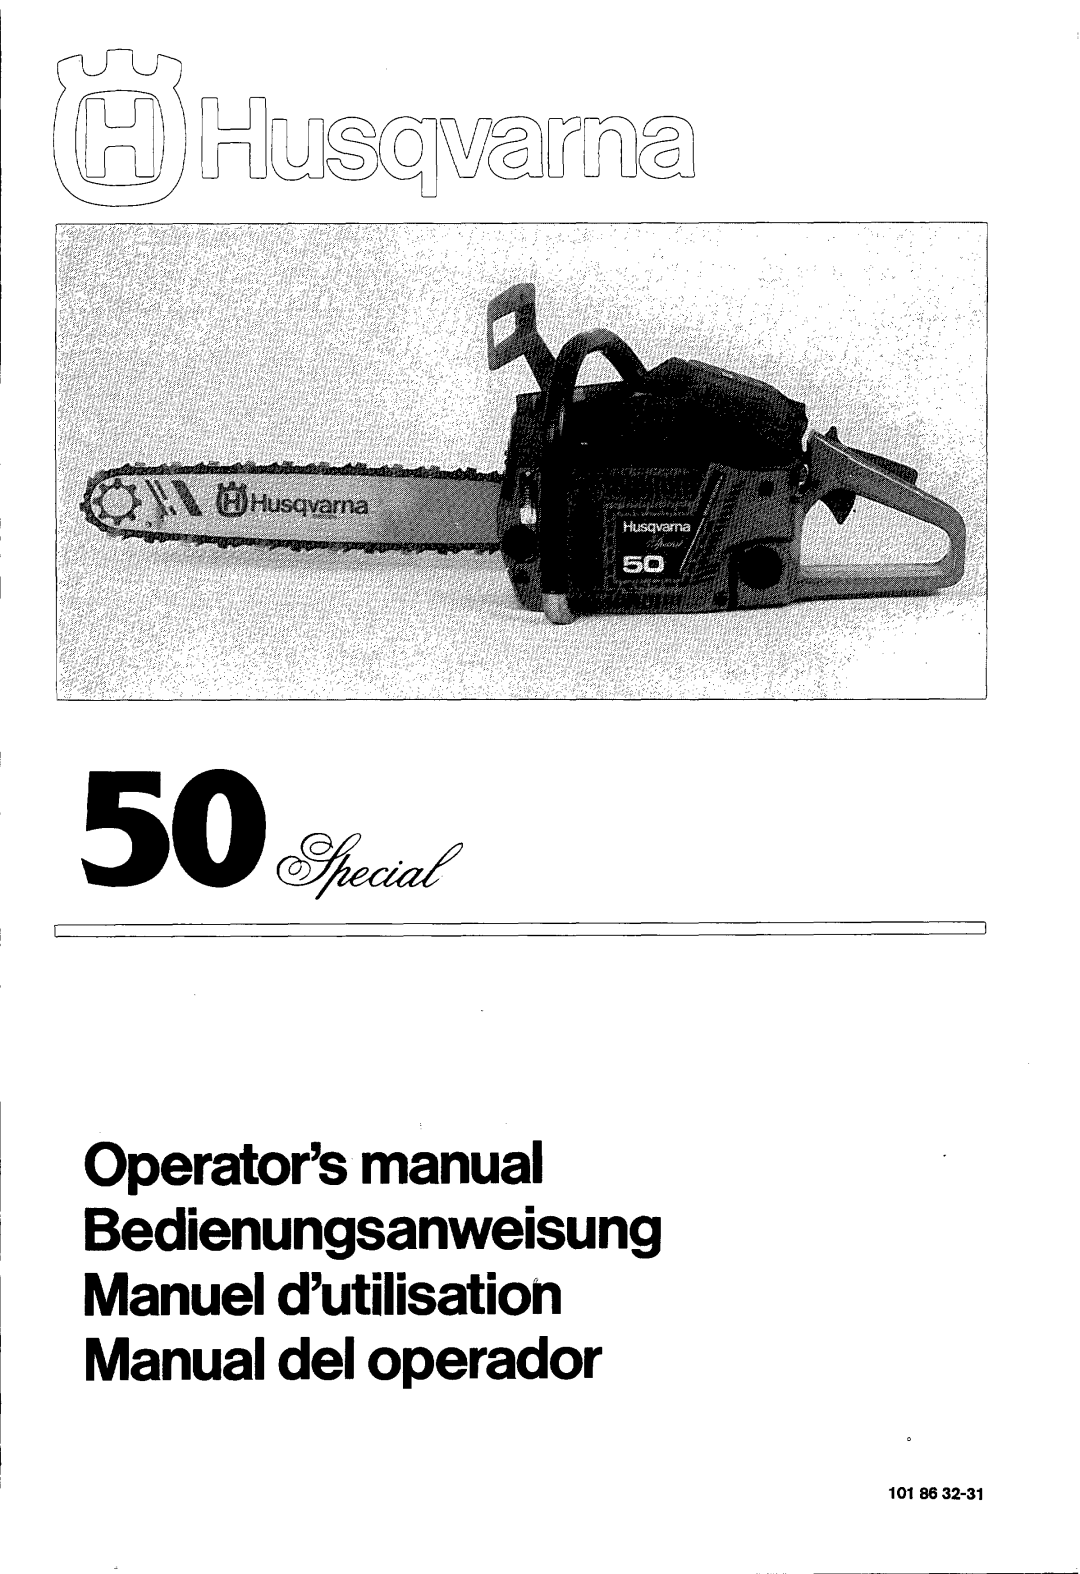 Husqvarna 50 Special manual 